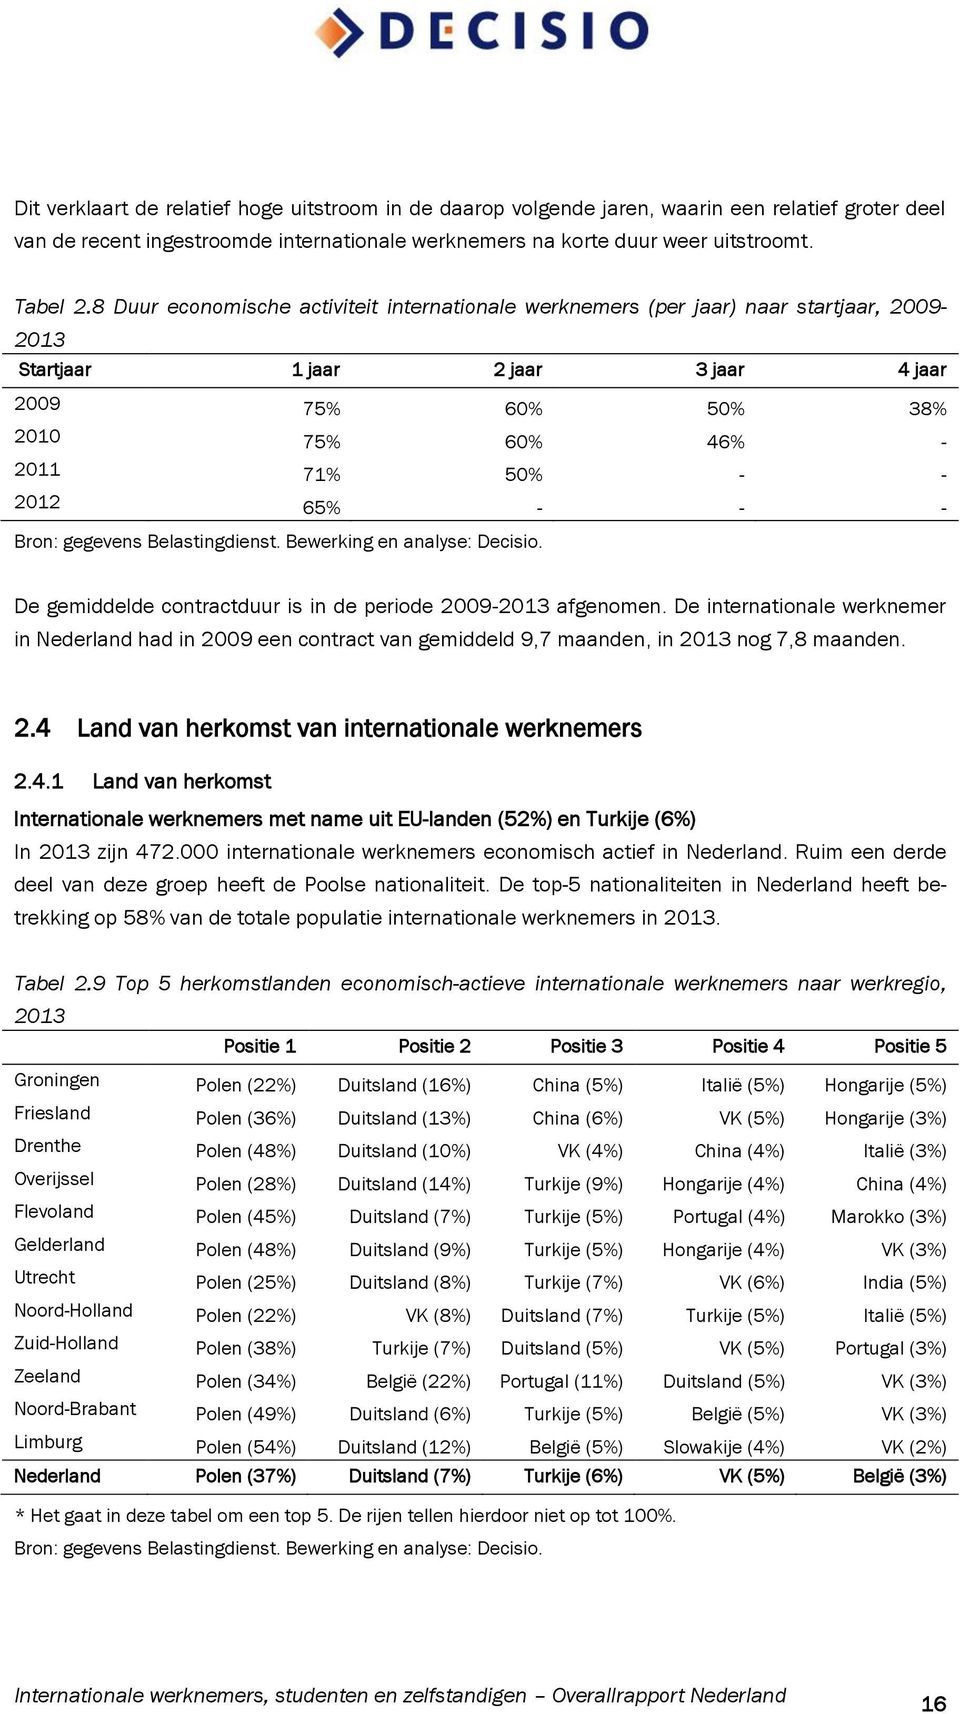 - - De gemiddelde contractduur is in de periode 2009-2013 afgenomen. De internationale werknemer in Nederland had in 2009 een contract van gemiddeld 9,7 maanden, in 2013 nog 7,8 maanden. 2.4 Land van herkomst van internationale werknemers 2.